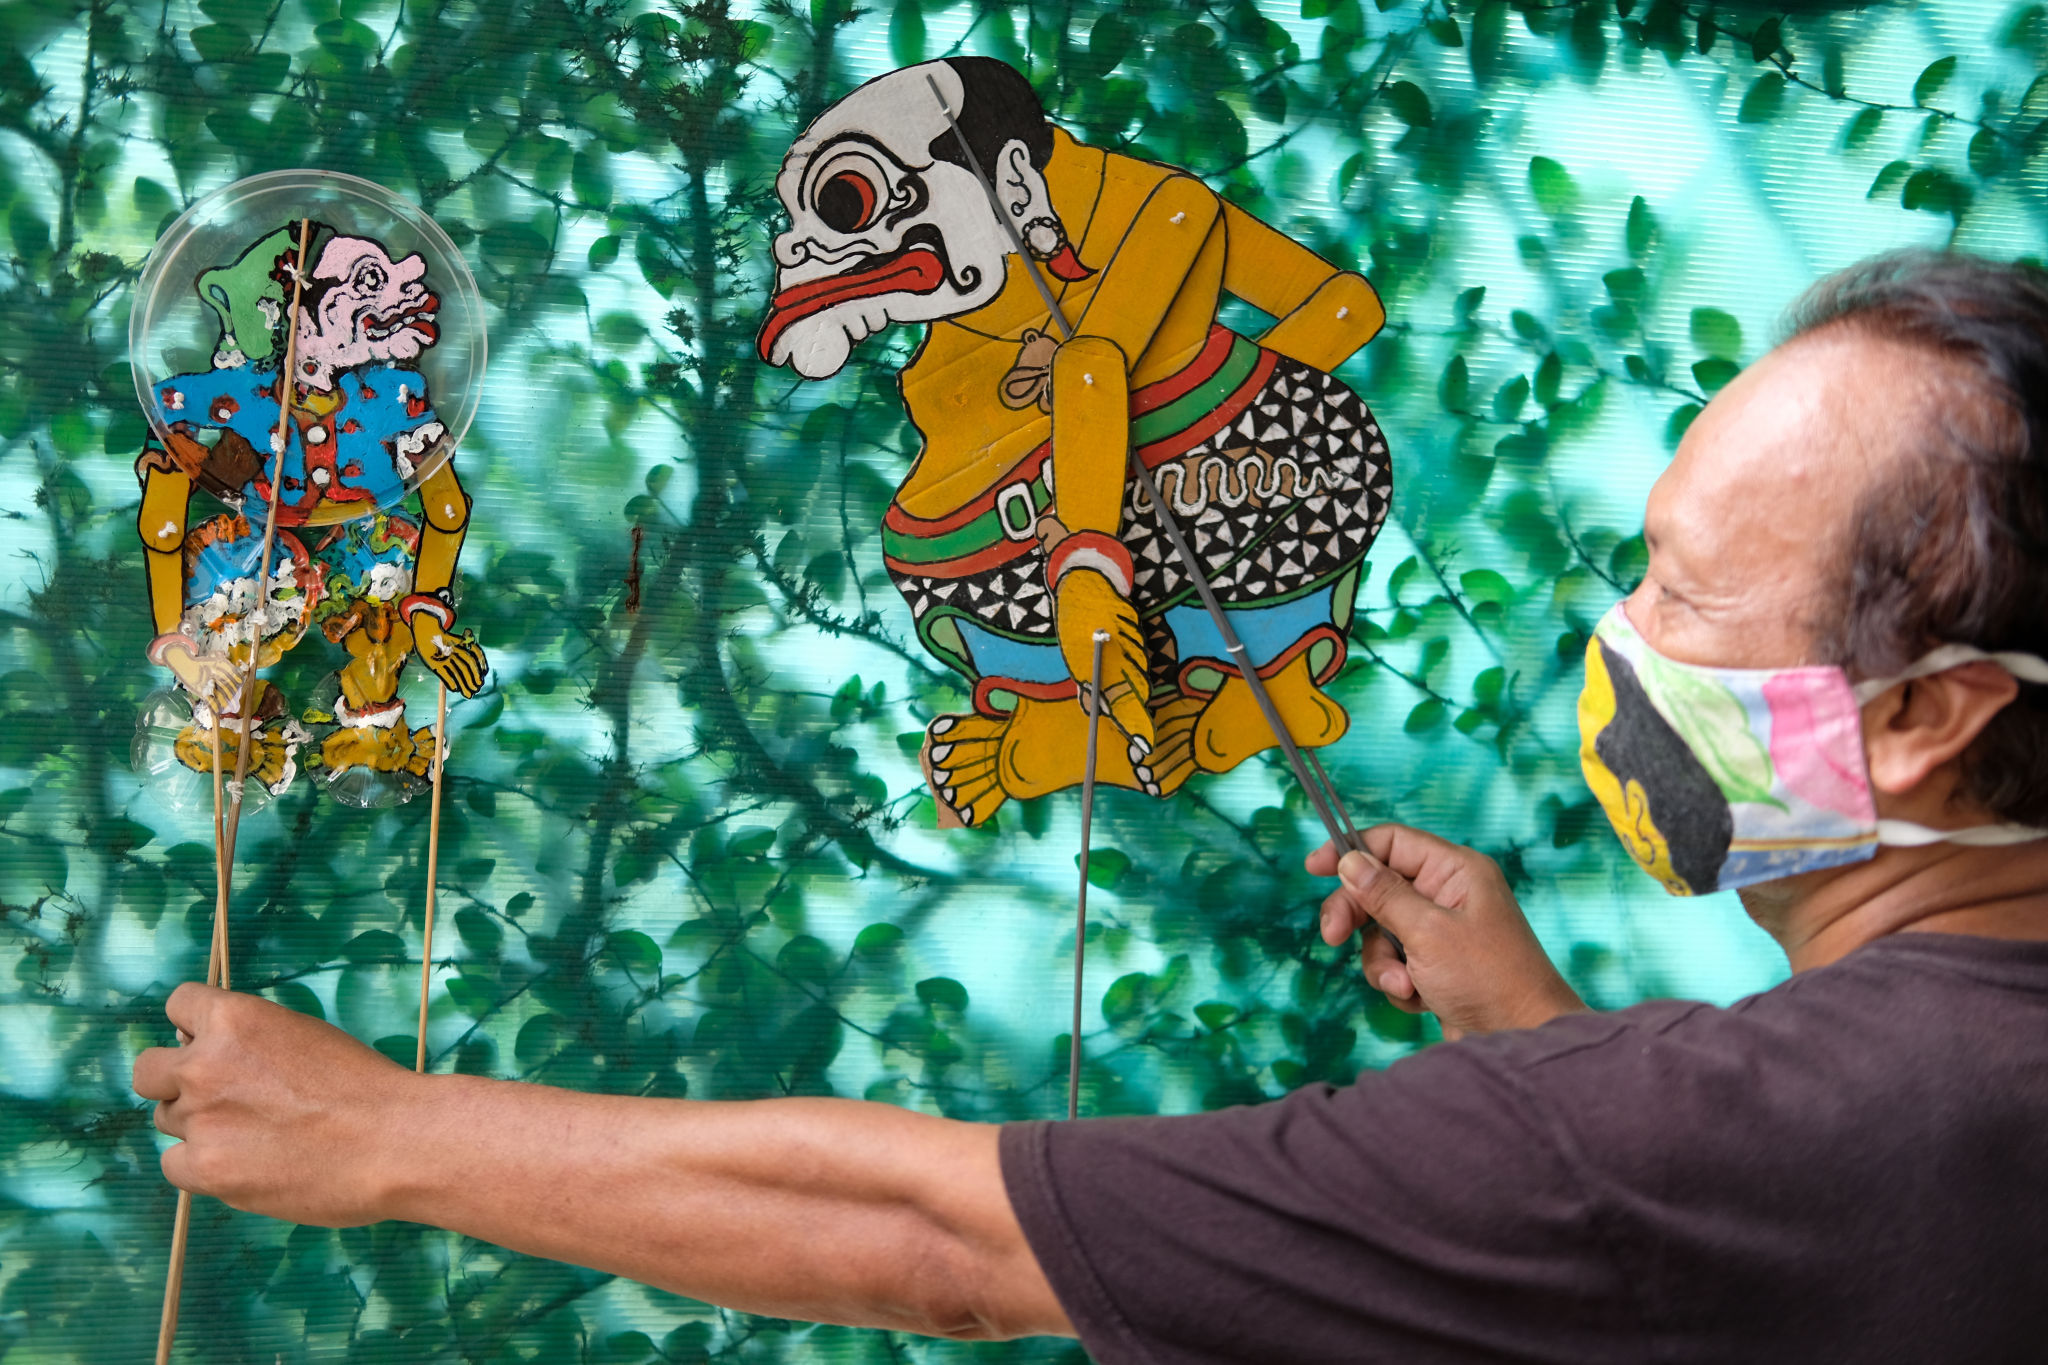 <p>Seniman wayang uwuh Iskandar Hardjodimuljo (59) menunjukkan wayang uwuh (berbahan sampah) karyanya di kawasan Cawang, Jakarta Timur, Selasa, 11 Agustus 2020. Iskandar yang sudah memproduksi wayang berbahan baku sampah sejak 2013 ini, tetap eksis berkarya karena kecintaannya terhadap dunia wayang dan lingkungan. Selama pandemi seniman ini bisa membuat 4-5 karakter wayang setiap harinya, wayang tersebut dijual dengan harga Rp 30 Ribu- Rp 300 Ribu tergantung tingkat kesulitan pembuatannya. Terkadang wayang yang diproduksi Iskandar juga kerap disumbangkan untuk sekolah-sekolah dan kelompok bermain anak, untuk mengedukasikan kepedulian terhadap lingkungan, seni dan budaya wayang. Foto: Ismail Pohan/TrenAsia</p>
